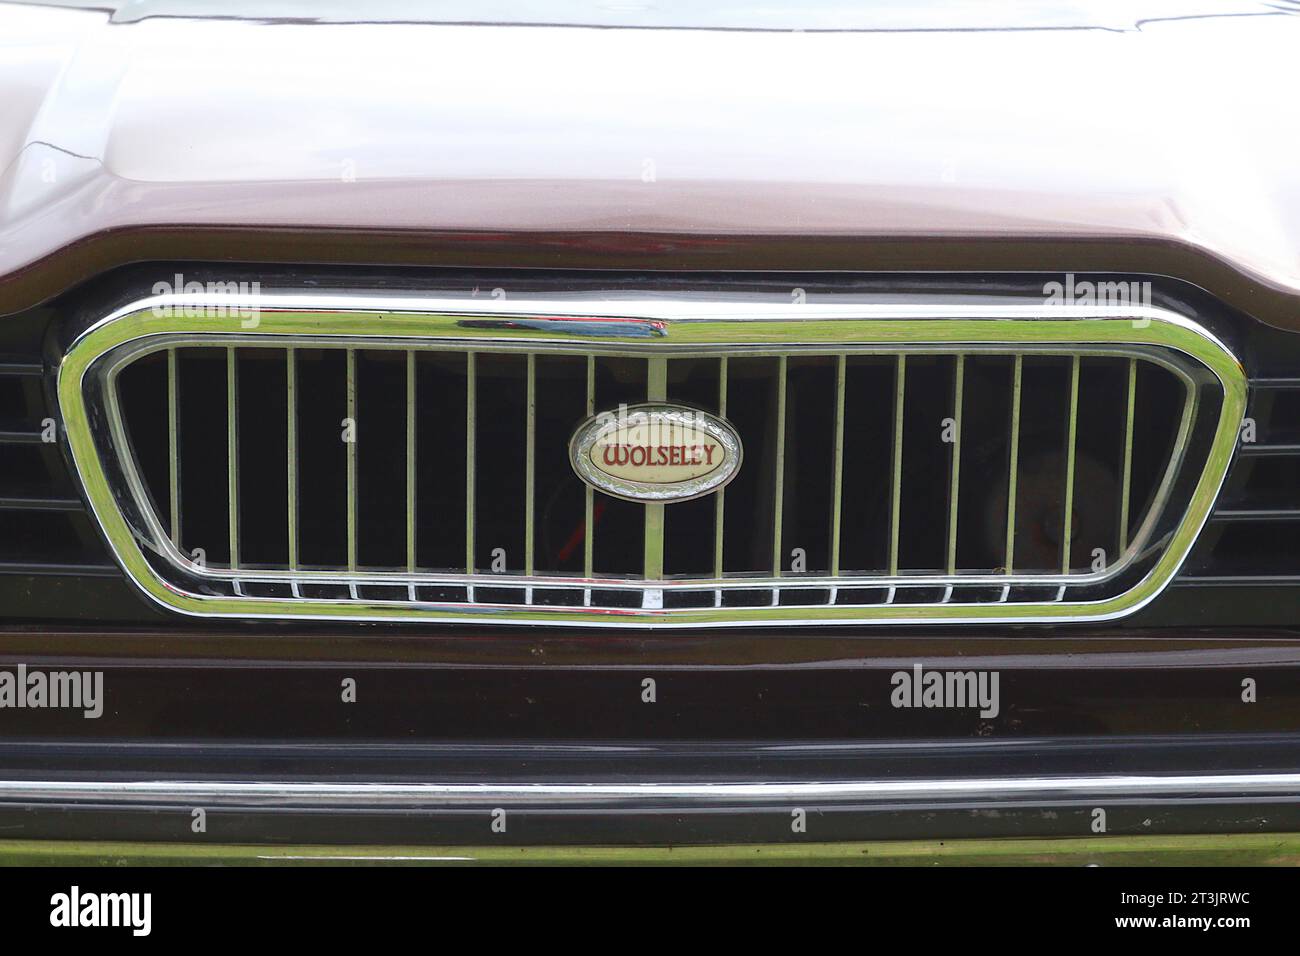 Das letzte Mal erschien der Name Wolseley auf einem Auto, einer 1975 18-22er Serie von Austin Morris. Weniger als 4.000 in 6 Monaten gebaut, weniger als 10 überleben. Stockfoto